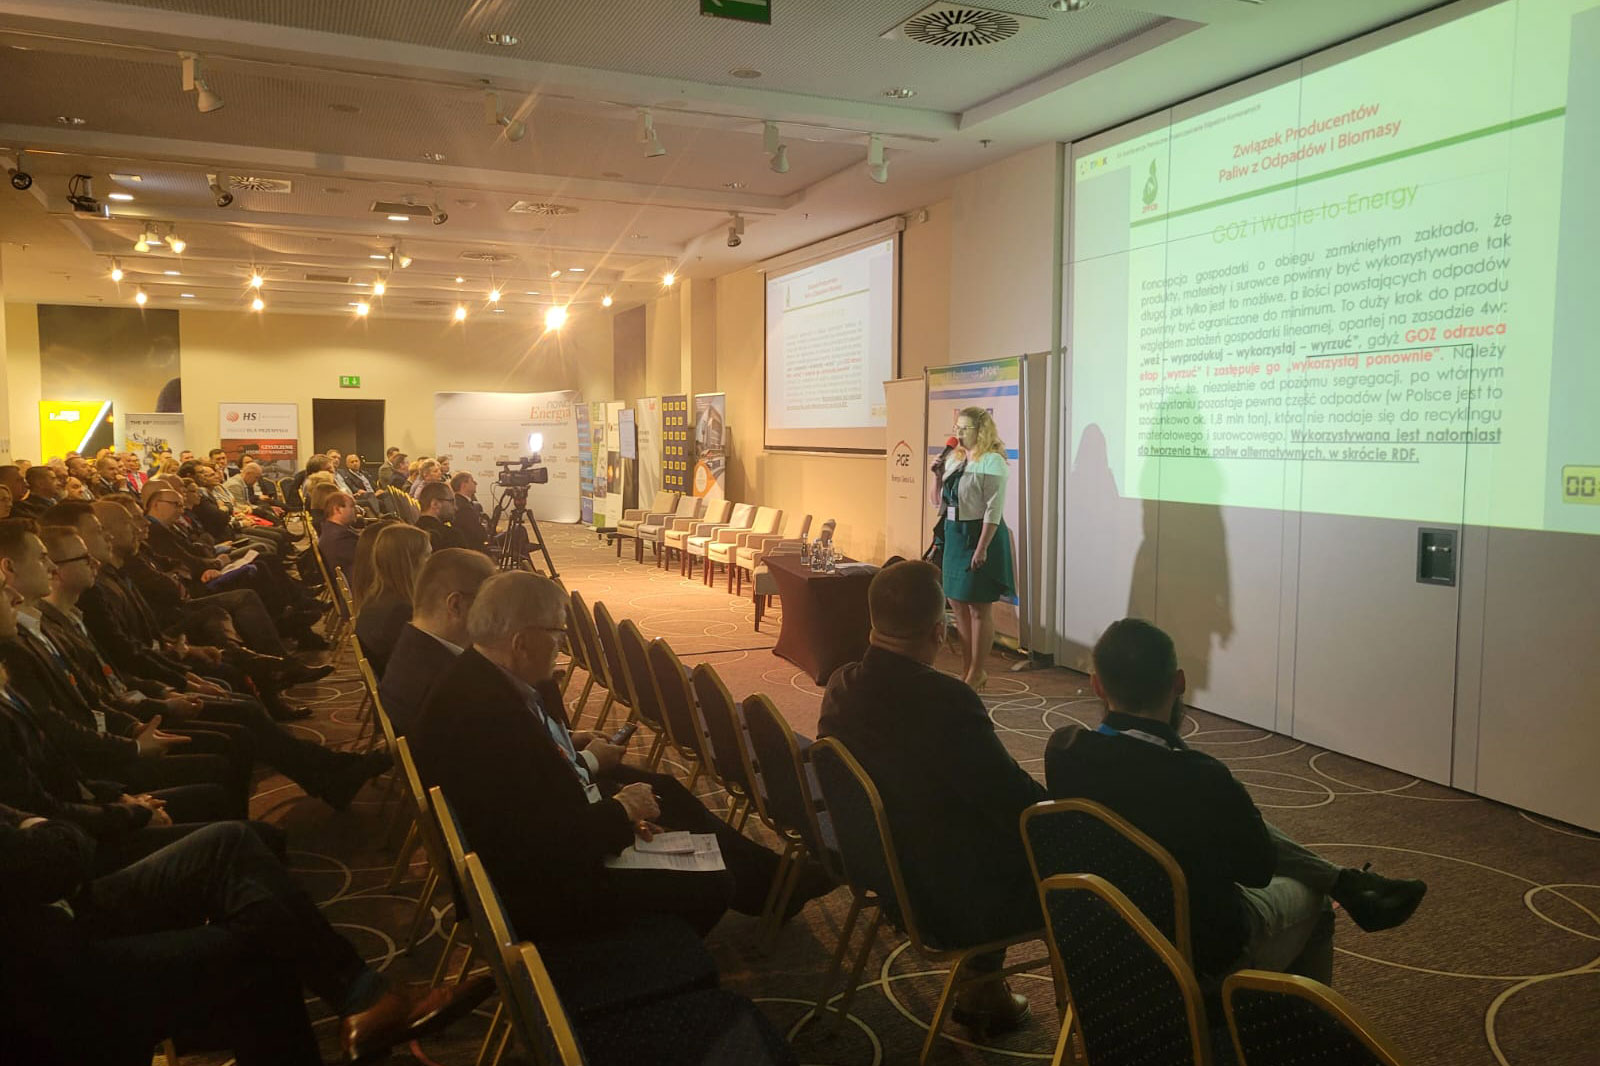 Przedstawiciele ZPPOB wzięli udział i wystąpili z prezentacją na spotkaniu Grupy Roboczej ds. Dostępności i pochodzenia biomasy